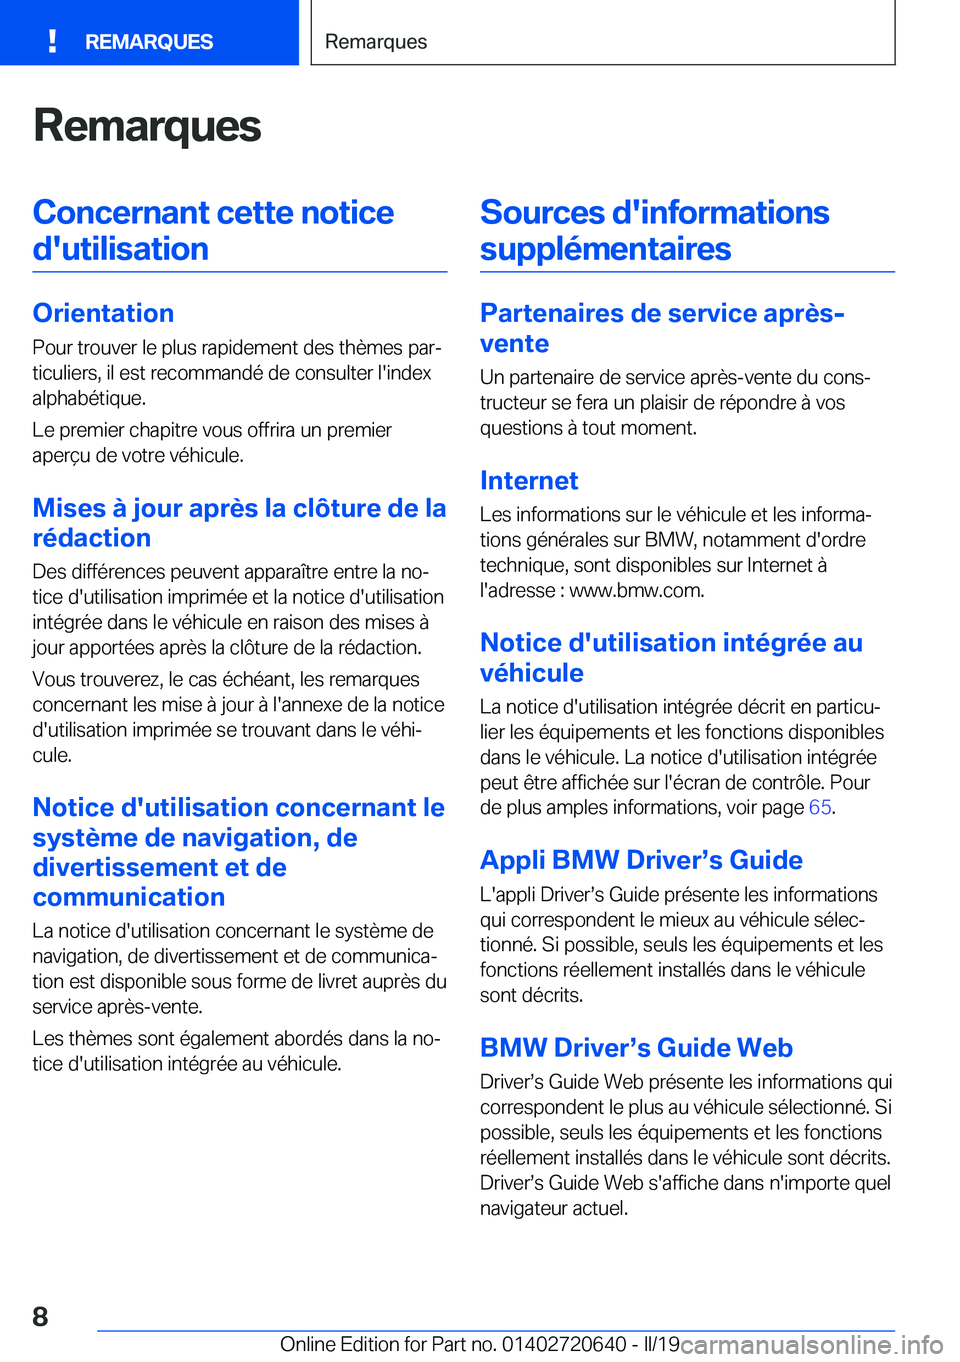 BMW M2 2020  Notices Demploi (in French) �R�e�m�a�r�q�u�e�s�C�o�n�c�e�r�n�a�n�t��c�e�t�t�e��n�o�t�i�c�e�d�'�u�t�i�l�i�s�a�t�i�o�n
�O�r�i�e�n�t�a�t�i�o�n �P�o�u�r��t�r�o�u�v�e�r��l�e��p�l�u�s��r�a�p�i�d�e�m�e�n�t��d�e�s��t�h�è�m�